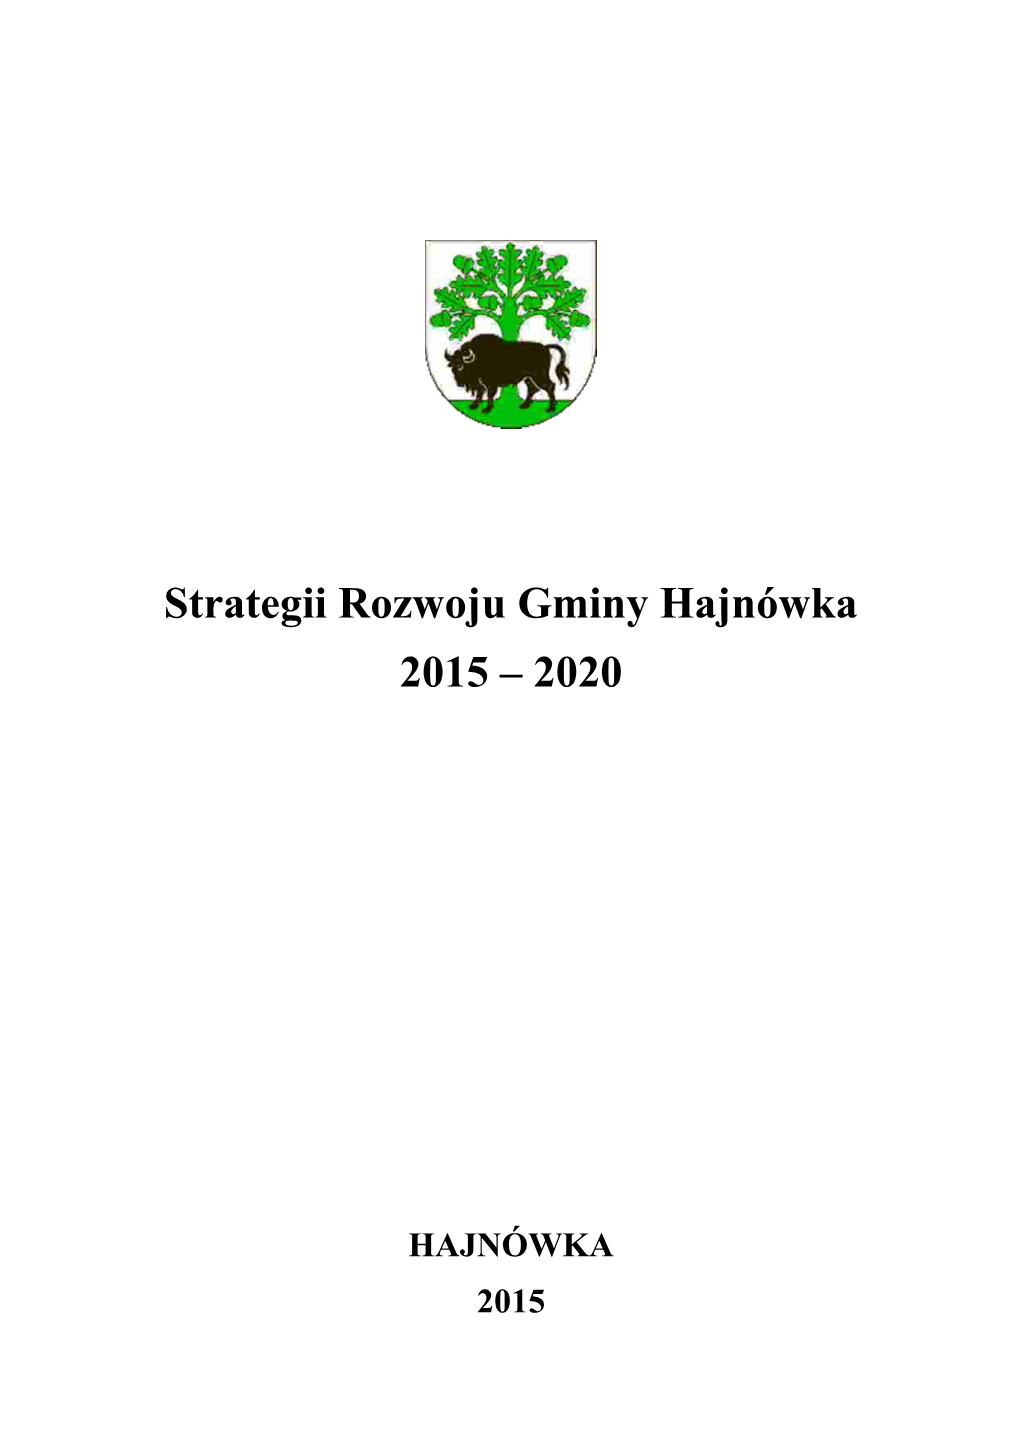 Strategii Rozwoju Gminy Hajnówka 2015 – 2020